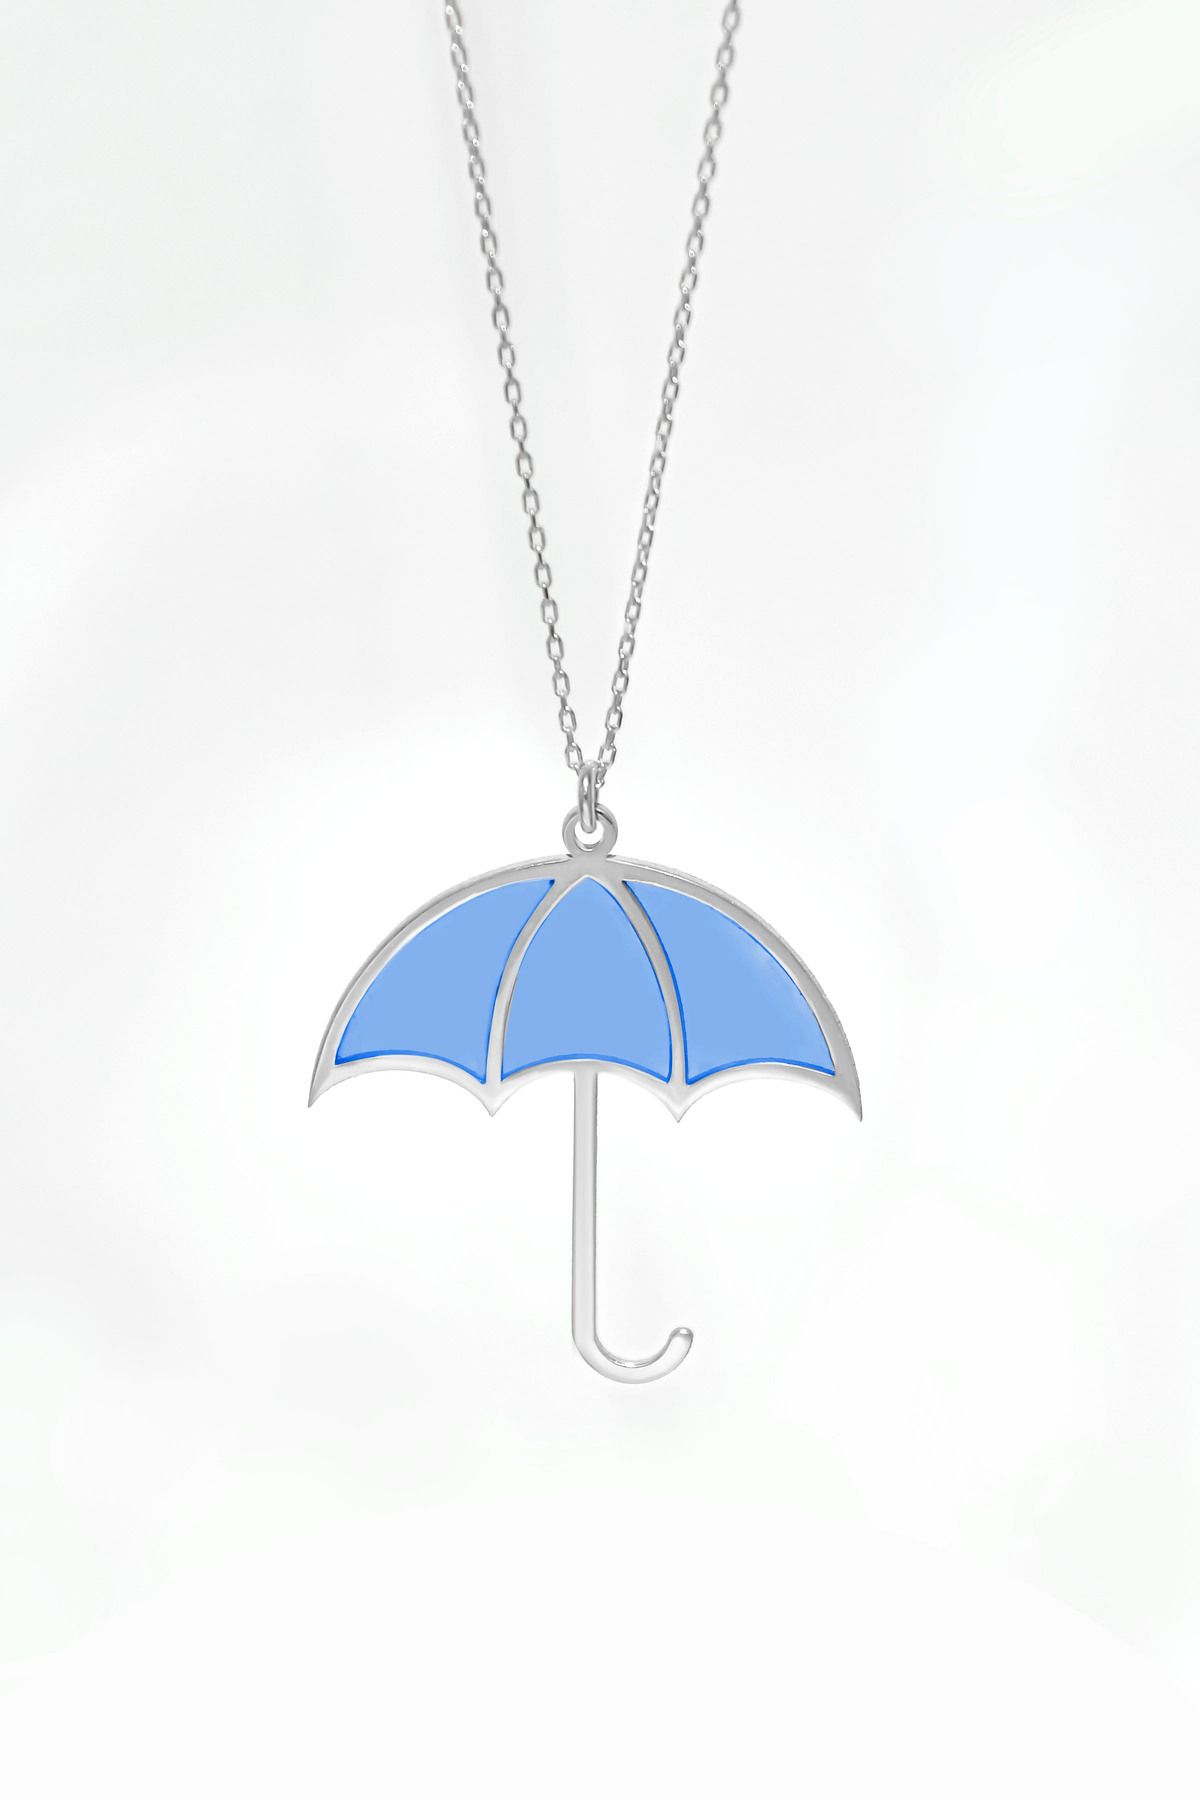 Papatya Silver 925 Ayar Gümüş Rodyum Kaplama Parlayan Rüya Serisi Tasarım Ebruli Mavi Cam Boyalı Şemsiye Kolye